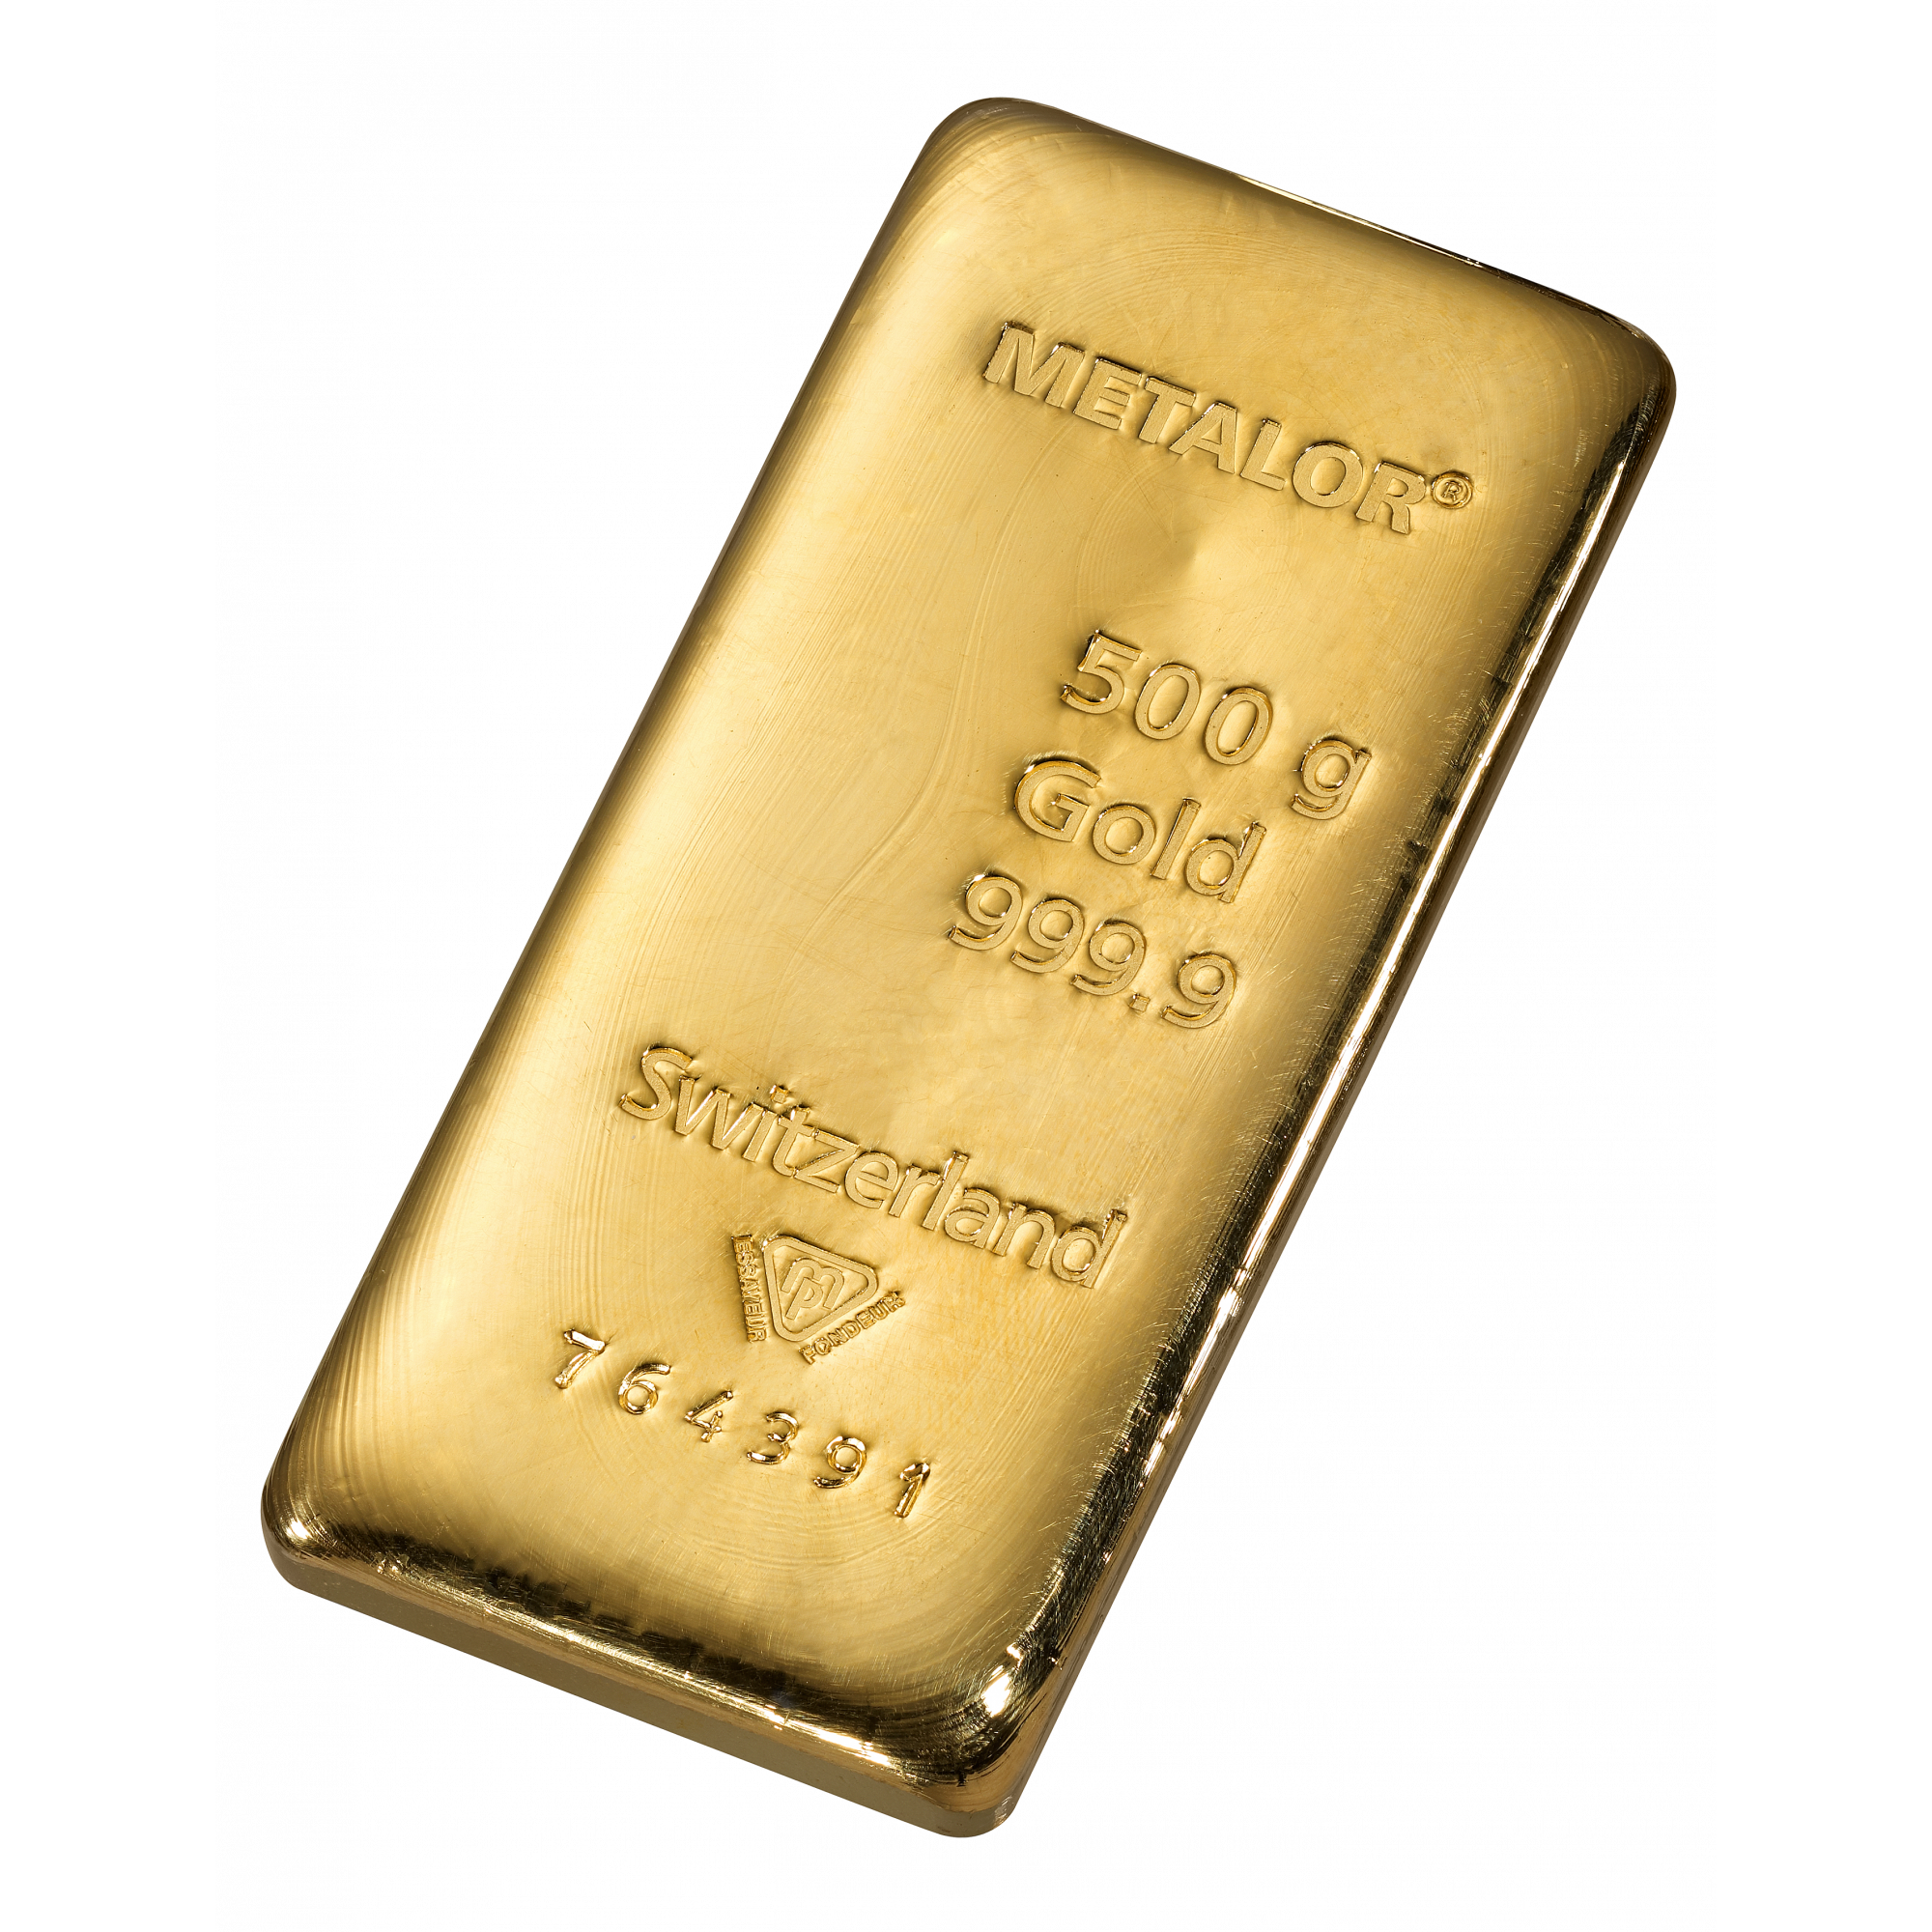 Invloedrijk geboren Draak 500 gr. goudbaar - Aankoop en verkoop goudprijs - beleggen in goud